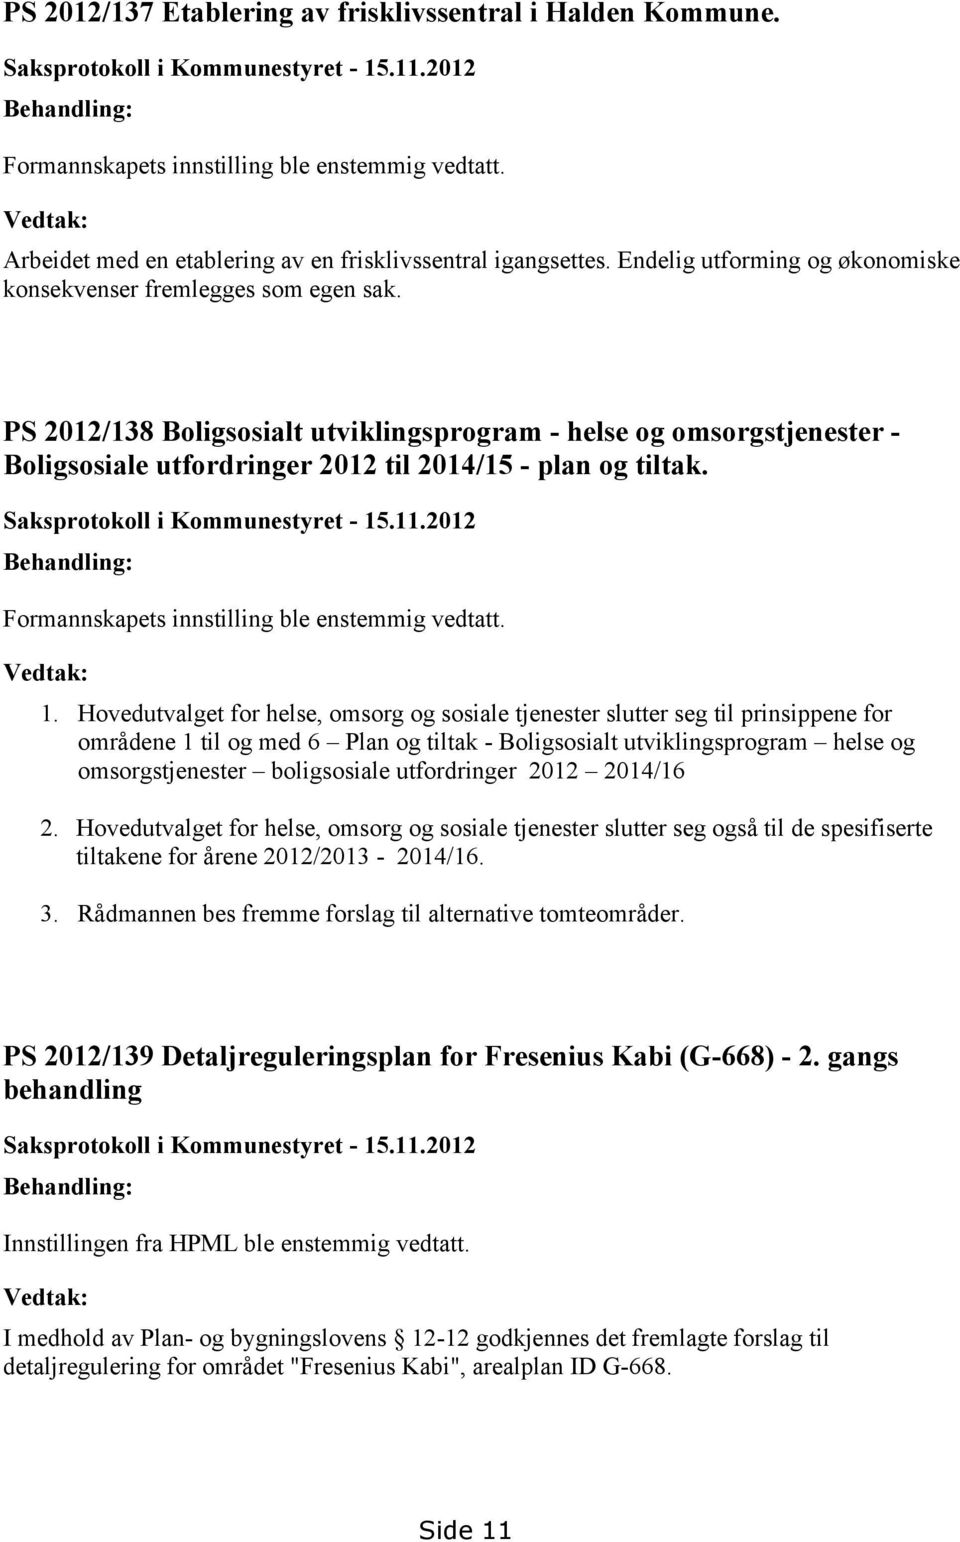 PS 2012/138 Boligsosialt utviklingsprogram - helse og omsorgstjenester - Boligsosiale utfordringer 2012 til 2014/15 - plan og tiltak. Saksprotokoll i Kommunestyret - 15.11.